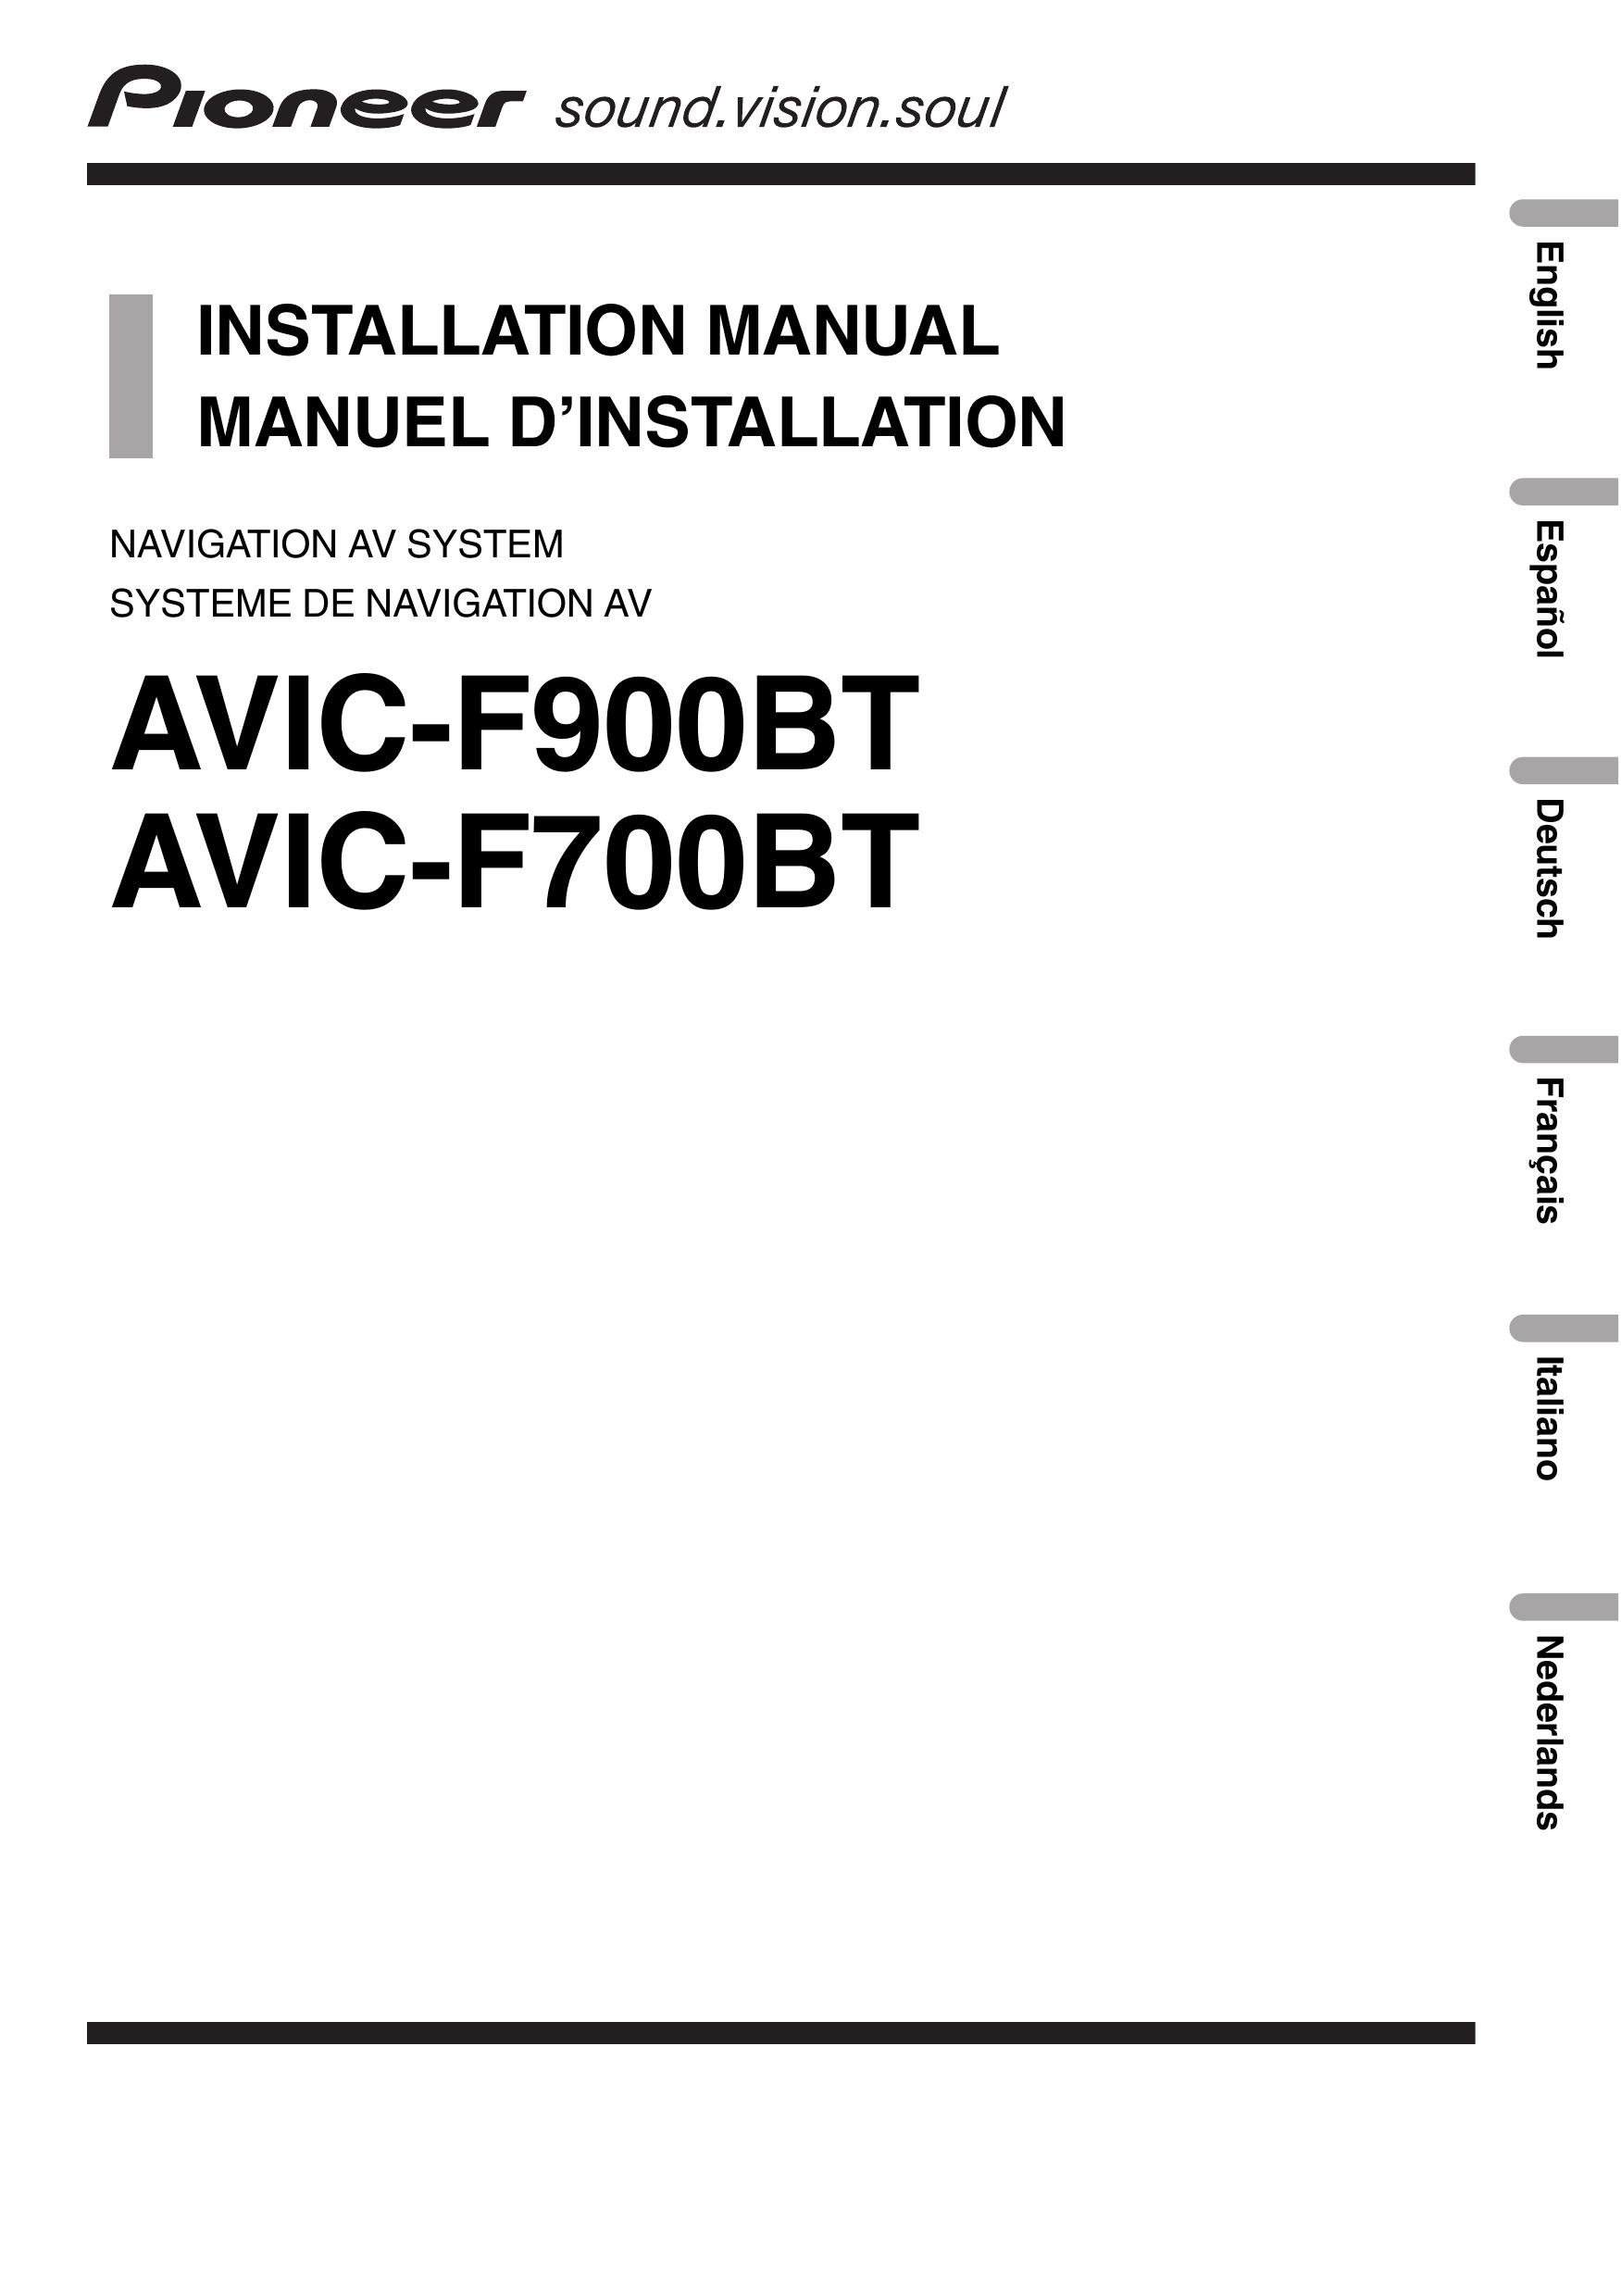 Pioneer AVIC-F700BT Marine GPS System User Manual